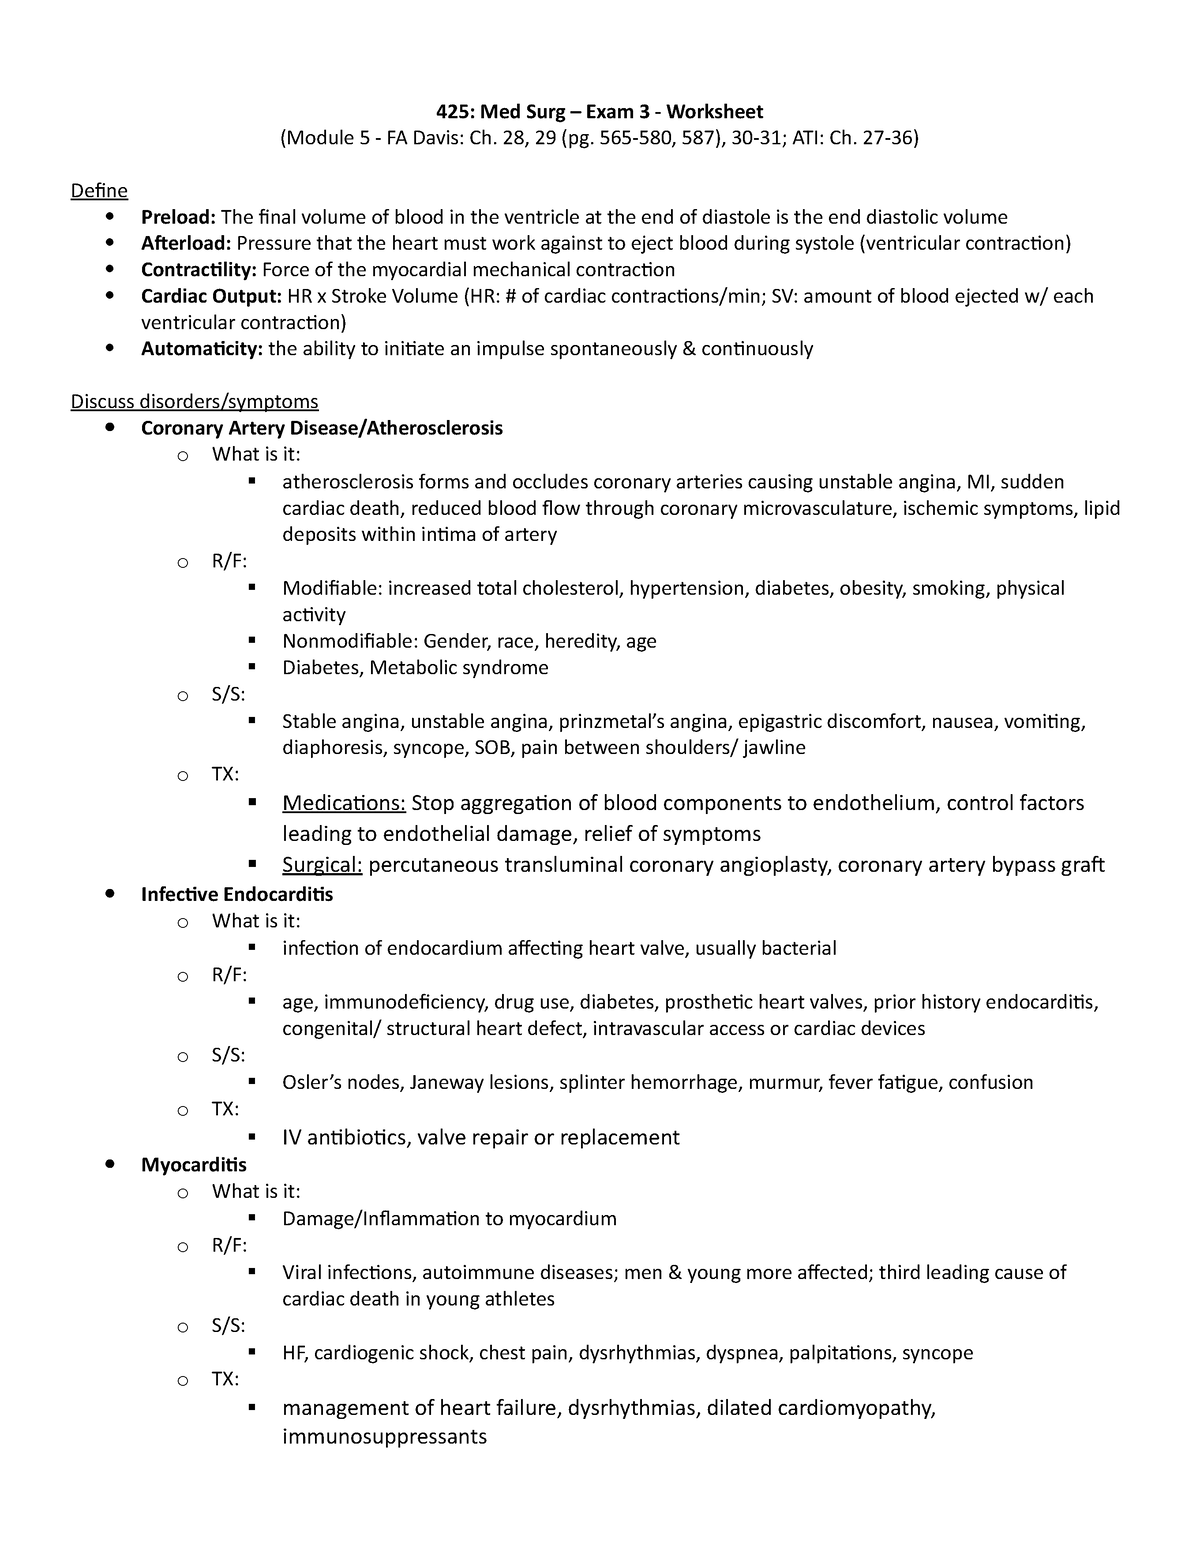 Module 5 worksheet-1 - 425: Med Surg – Exam 3 - Worksheet (Module 5 ...